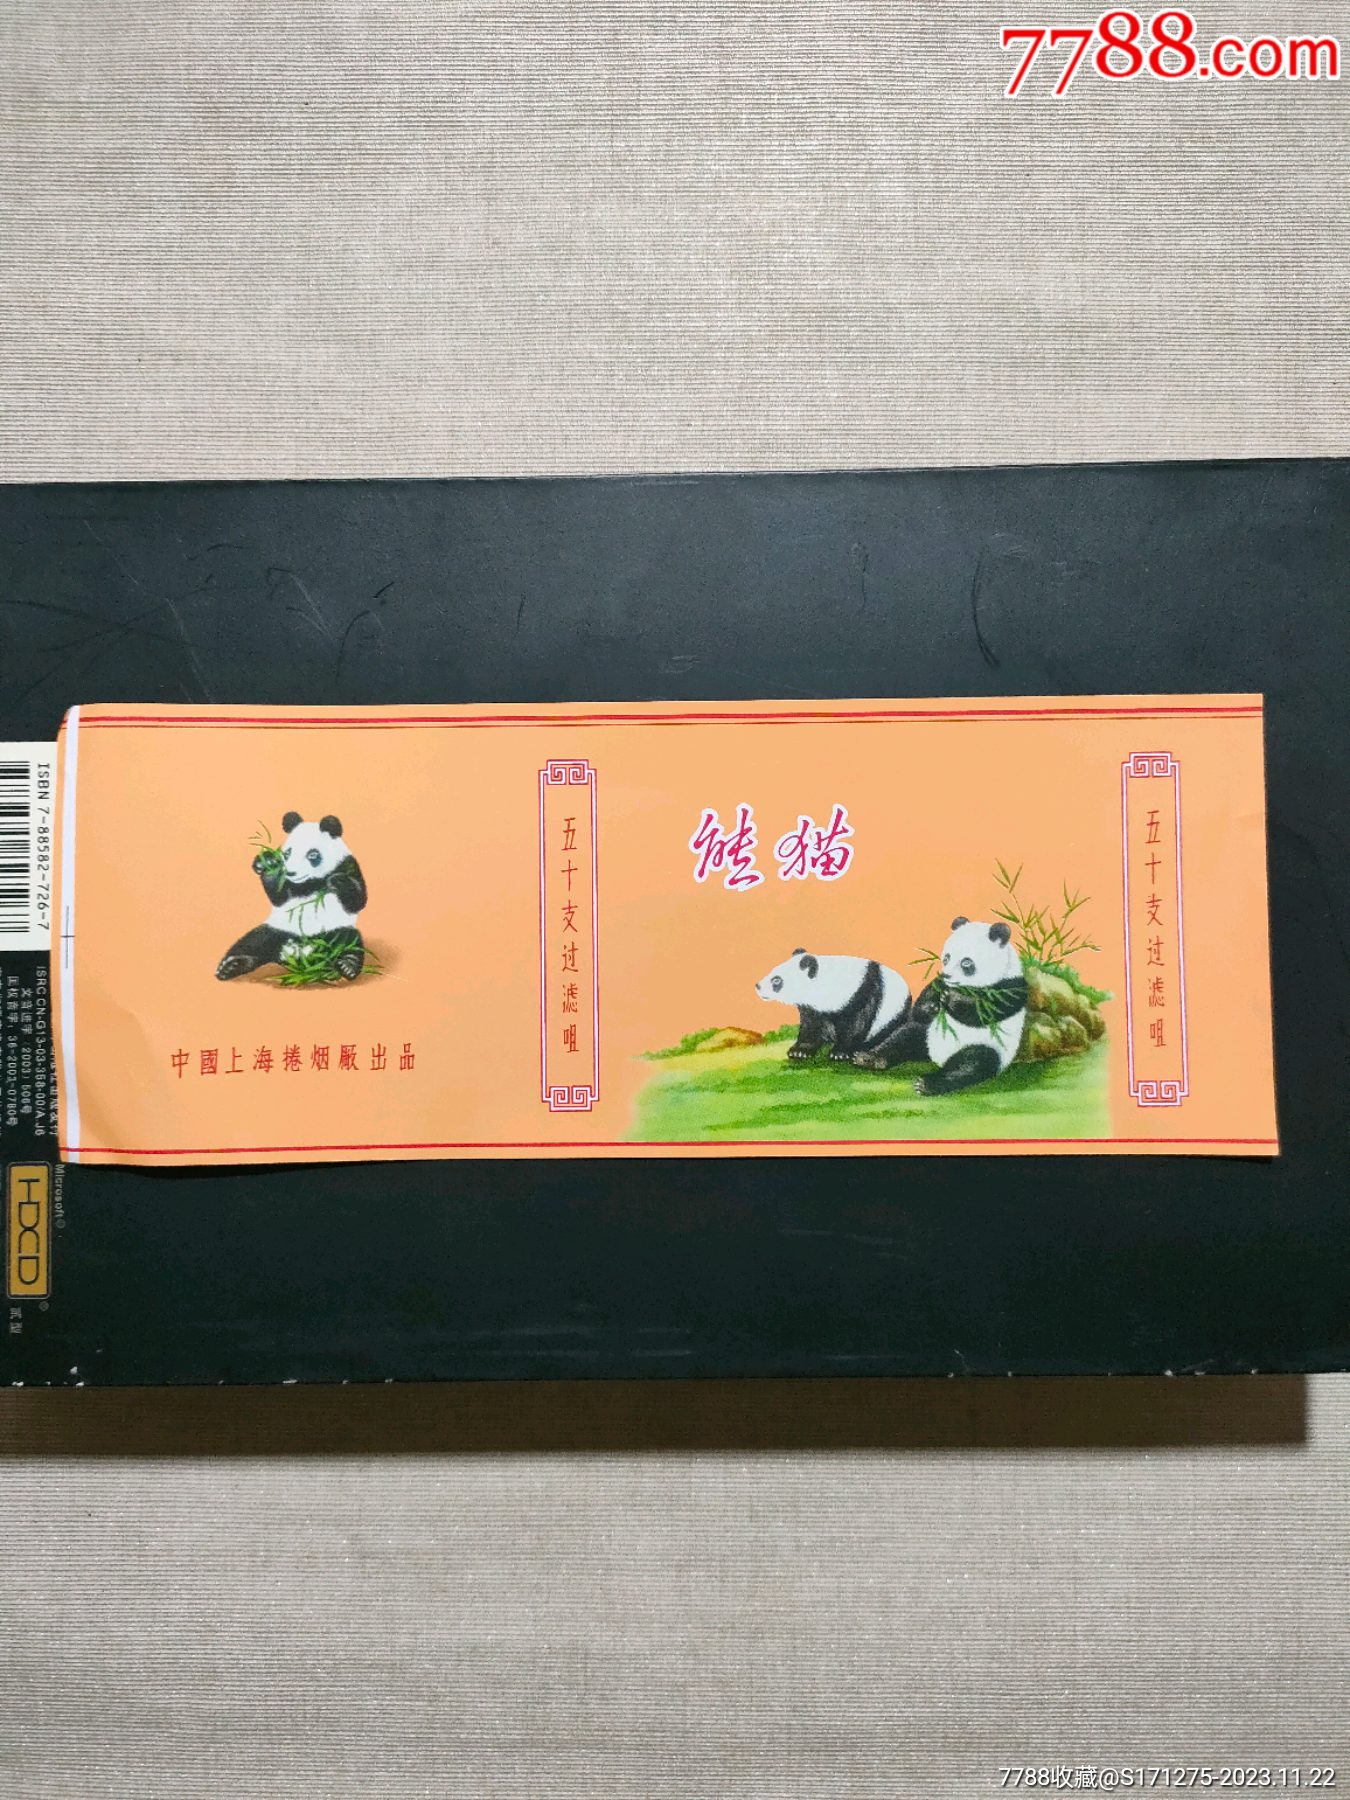 熊猫香烟图片大全价钱图片